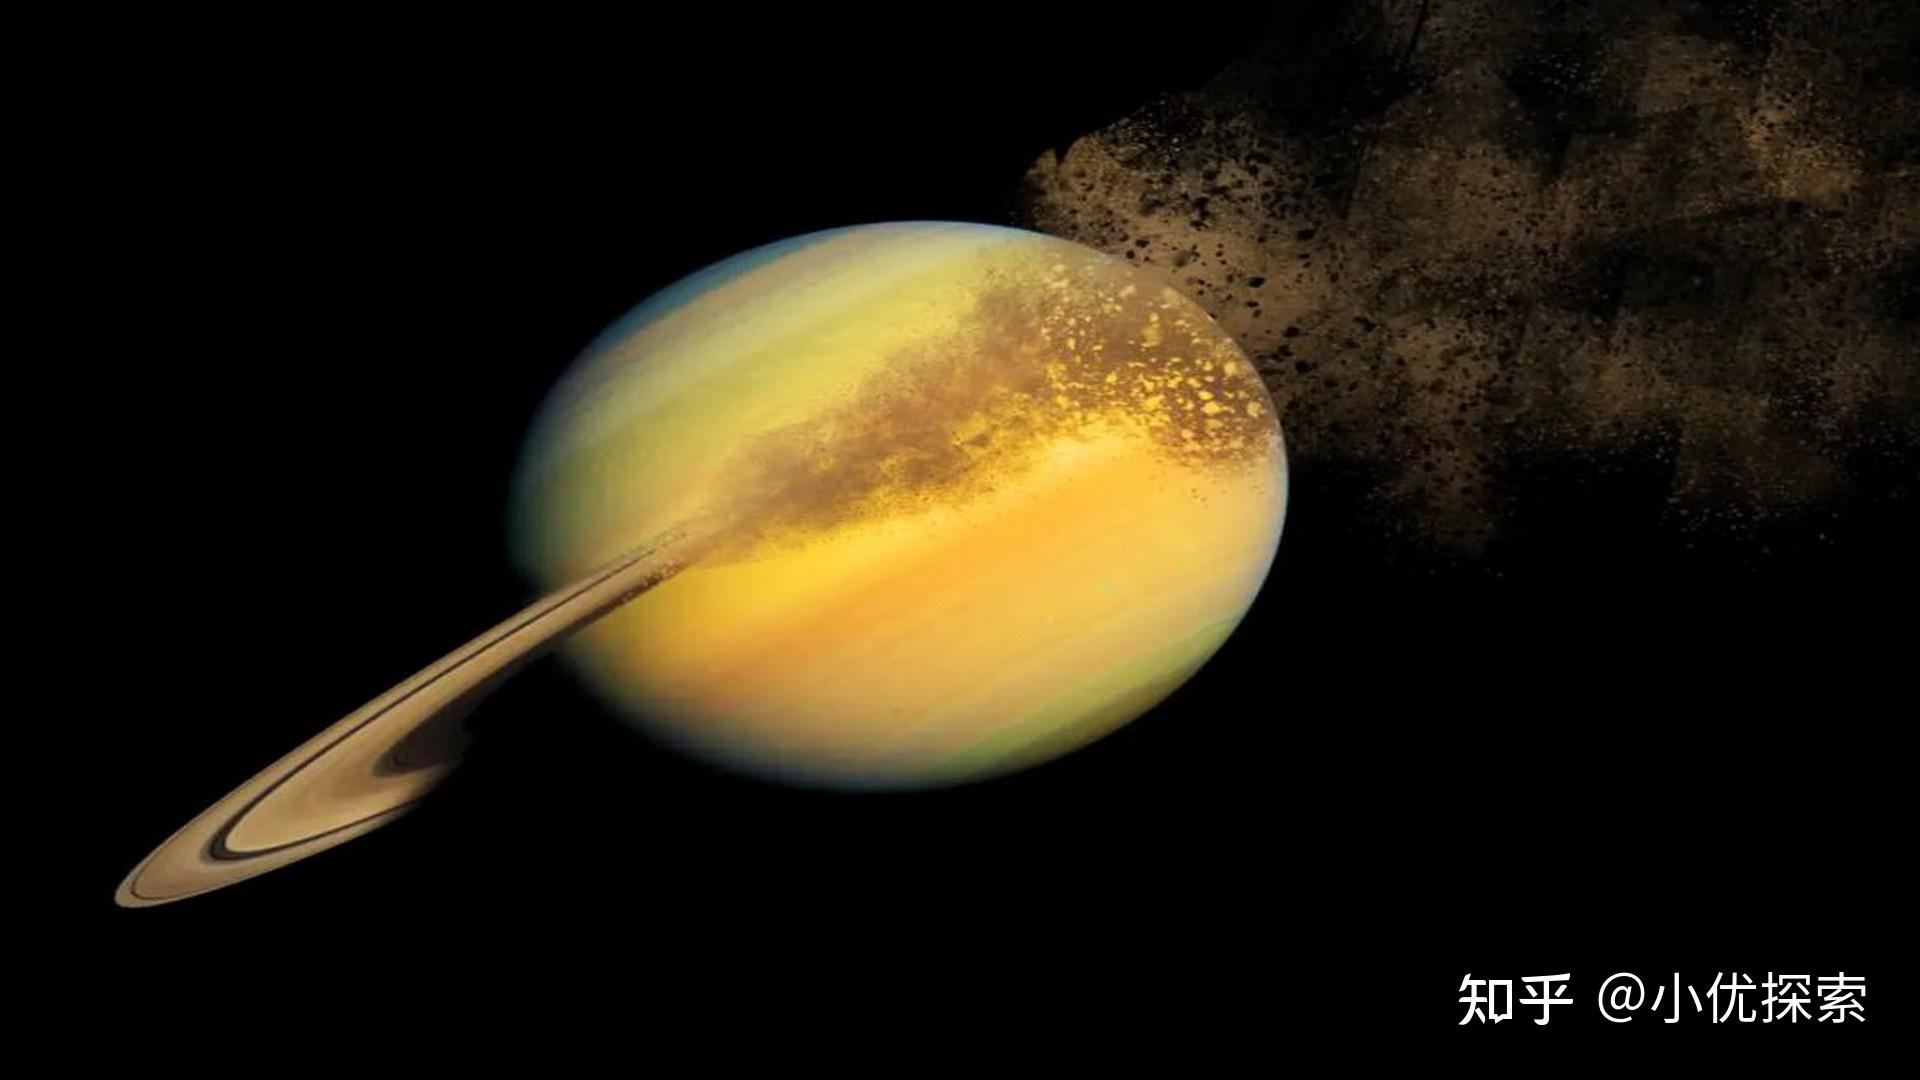 科学家用土星环当地震仪观察土星内核,发现其核心竟是模糊的